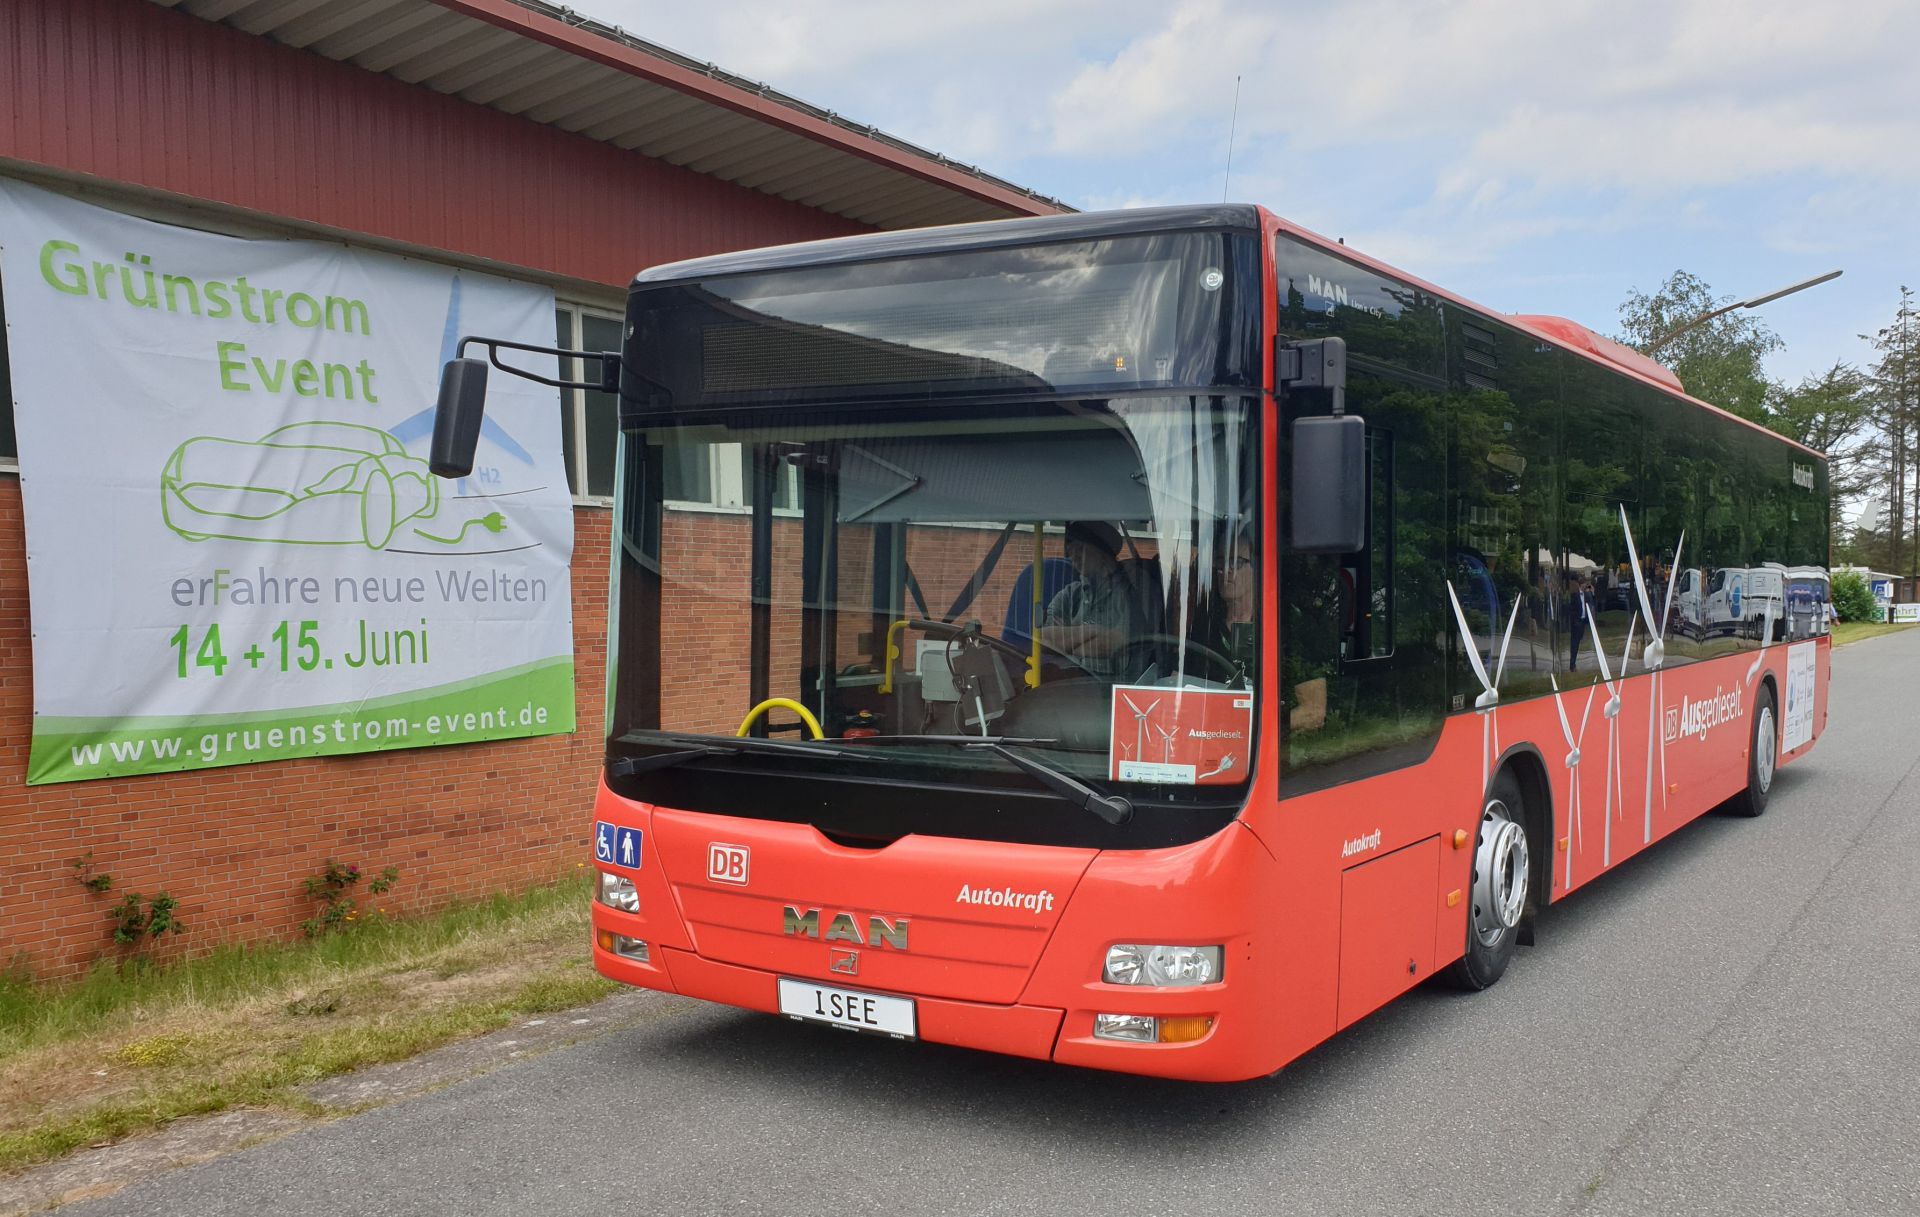 PilUDE - Pilot zum Umbau von Dieselbussen auf reinen Elektroantrieb